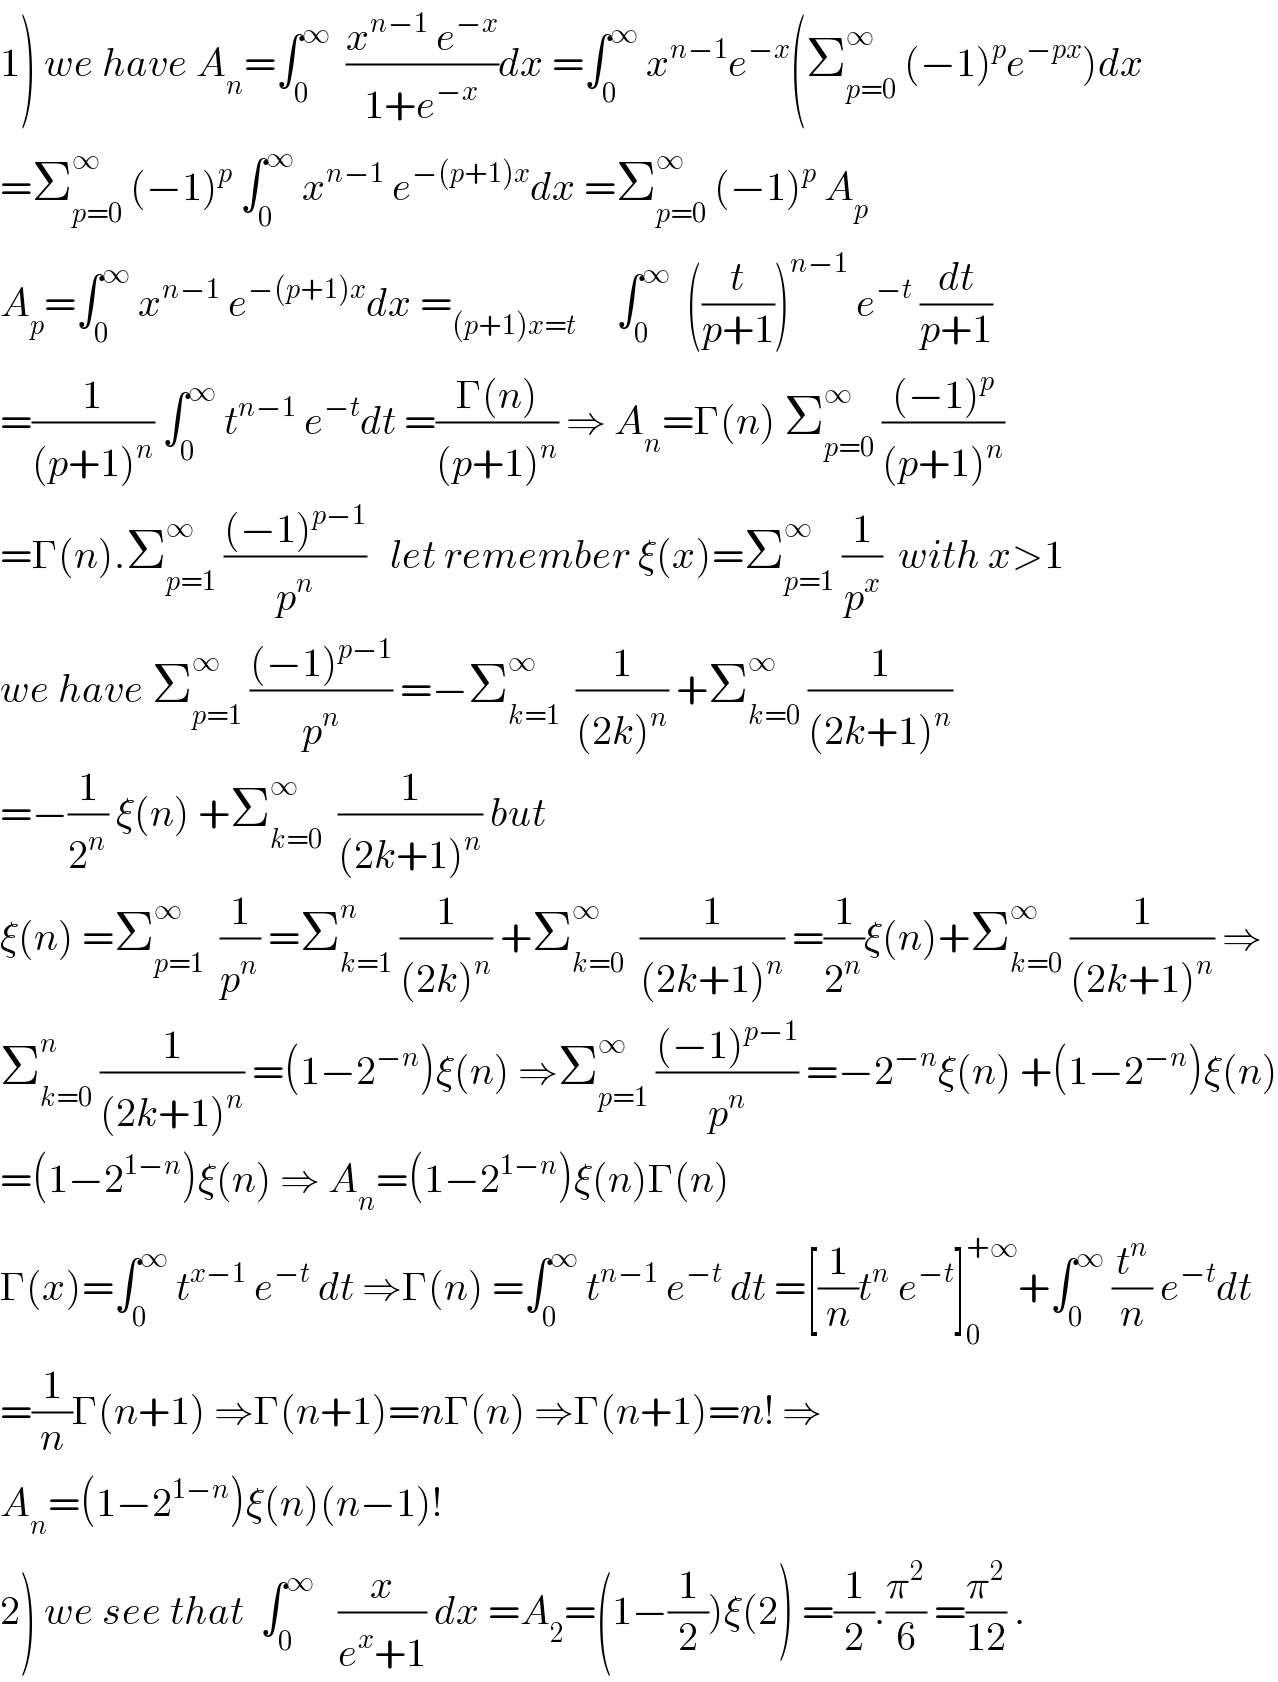 1) we have A_n =∫_0 ^∞   ((x^(n−1)  e^(−x) )/(1+e^(−x) ))dx =∫_0 ^∞  x^(n−1) e^(−x) (Σ_(p=0) ^∞  (−1)^p e^(−px) )dx  =Σ_(p=0) ^∞  (−1)^p  ∫_0 ^∞  x^(n−1)  e^(−(p+1)x) dx =Σ_(p=0) ^∞  (−1)^p  A_p   A_p =∫_0 ^∞  x^(n−1)  e^(−(p+1)x) dx =_((p+1)x=t)      ∫_0 ^∞   ((t/(p+1)))^(n−1)  e^(−t)  (dt/(p+1))  =(1/((p+1)^n )) ∫_0 ^∞  t^(n−1)  e^(−t) dt =((Γ(n))/((p+1)^n )) ⇒ A_n =Γ(n) Σ_(p=0) ^∞  (((−1)^p )/((p+1)^n ))  =Γ(n).Σ_(p=1) ^∞  (((−1)^(p−1) )/p^n )   let remember ξ(x)=Σ_(p=1) ^∞  (1/p^x )  with x>1  we have Σ_(p=1) ^∞  (((−1)^(p−1) )/p^n ) =−Σ_(k=1) ^∞   (1/((2k)^n )) +Σ_(k=0) ^∞  (1/((2k+1)^n ))  =−(1/2^n ) ξ(n) +Σ_(k=0) ^∞   (1/((2k+1)^n )) but  ξ(n) =Σ_(p=1) ^∞   (1/p^n ) =Σ_(k=1) ^n  (1/((2k)^n )) +Σ_(k=0) ^∞   (1/((2k+1)^n )) =(1/2^n )ξ(n)+Σ_(k=0) ^∞  (1/((2k+1)^n )) ⇒  Σ_(k=0) ^n  (1/((2k+1)^n )) =(1−2^(−n) )ξ(n) ⇒Σ_(p=1) ^∞  (((−1)^(p−1) )/p^n ) =−2^(−n) ξ(n) +(1−2^(−n) )ξ(n)  =(1−2^(1−n) )ξ(n) ⇒ A_n =(1−2^(1−n) )ξ(n)Γ(n)  Γ(x)=∫_0 ^∞  t^(x−1)  e^(−t)  dt ⇒Γ(n) =∫_0 ^∞  t^(n−1)  e^(−t)  dt =[(1/n)t^n  e^(−t) ]_0 ^(+∞) +∫_0 ^∞  (t^n /n) e^(−t) dt  =(1/n)Γ(n+1) ⇒Γ(n+1)=nΓ(n) ⇒Γ(n+1)=n! ⇒  A_n =(1−2^(1−n) )ξ(n)(n−1)!  2) we see that  ∫_0 ^∞    (x/(e^x +1)) dx =A_2 =(1−(1/2))ξ(2) =(1/2).(π^2 /6) =(π^2 /(12)) .  